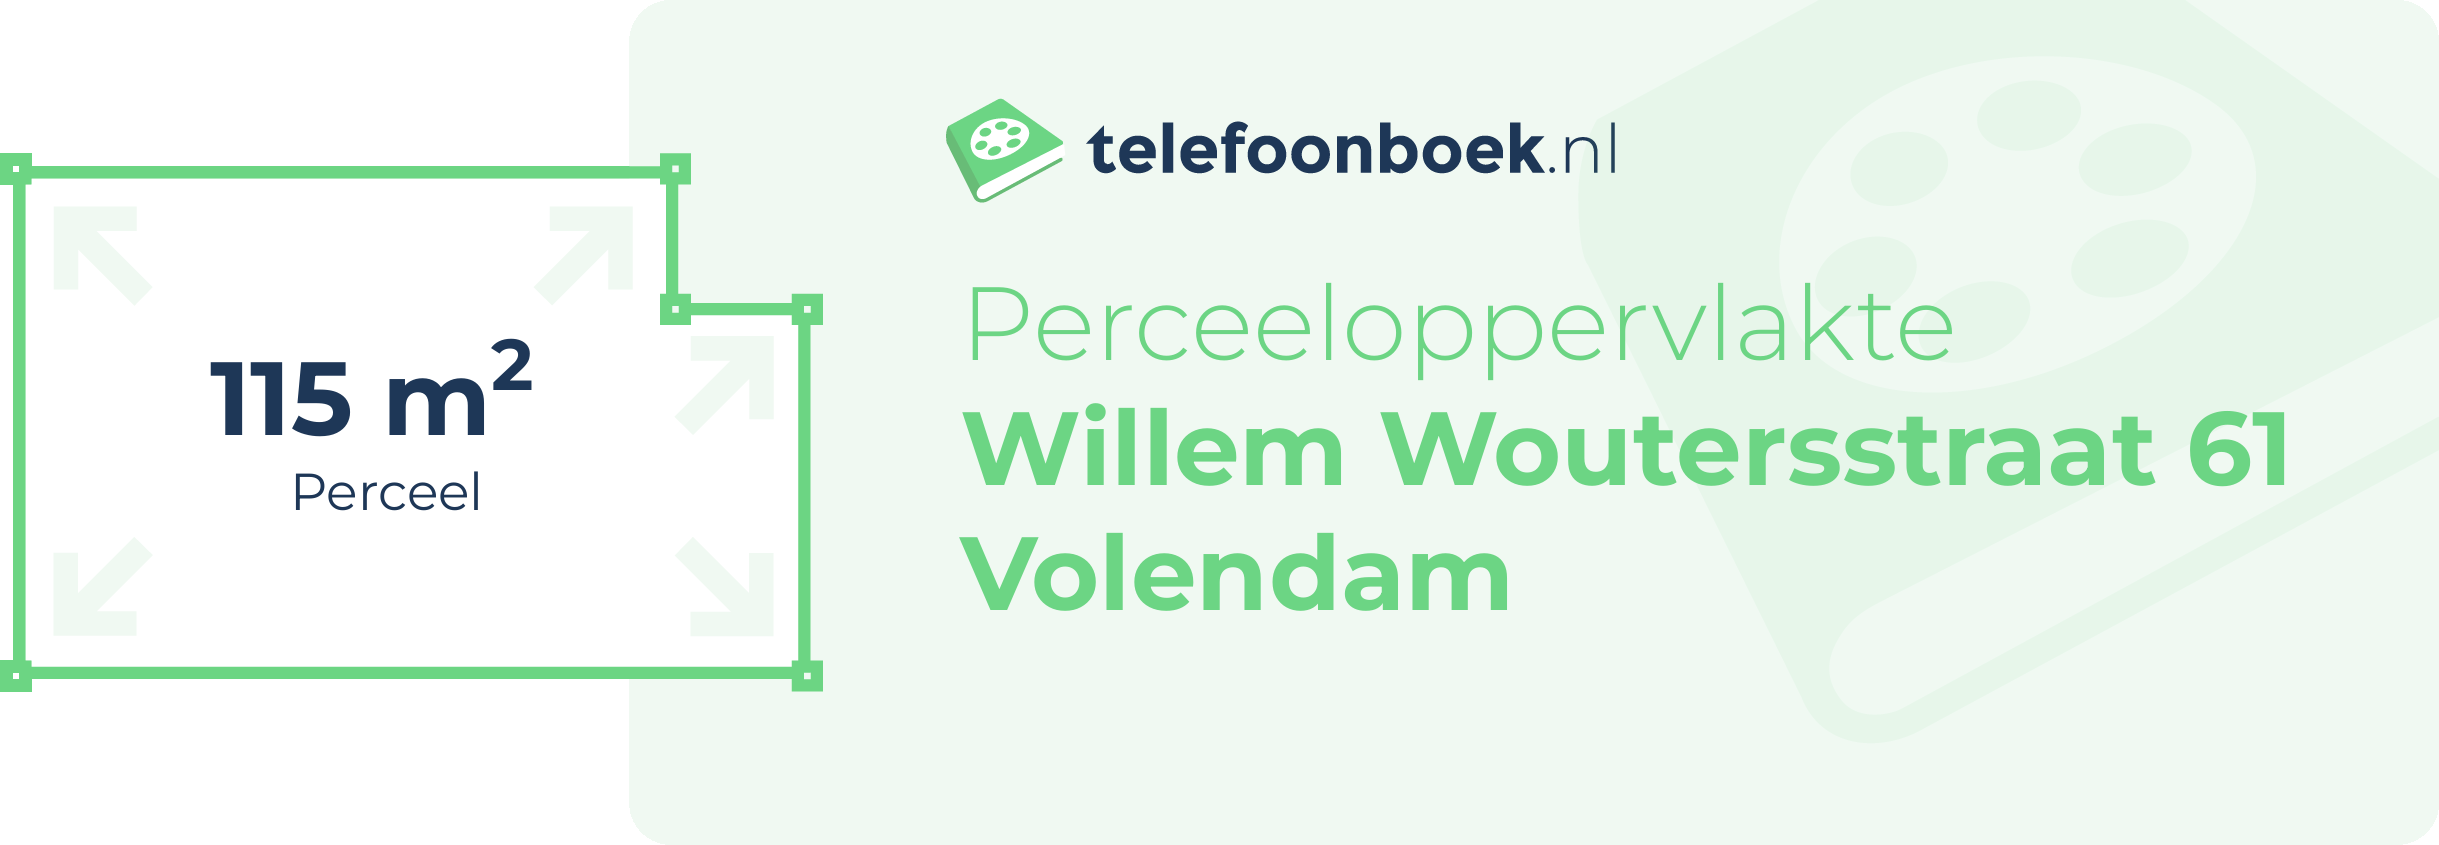 Perceeloppervlakte Willem Woutersstraat 61 Volendam